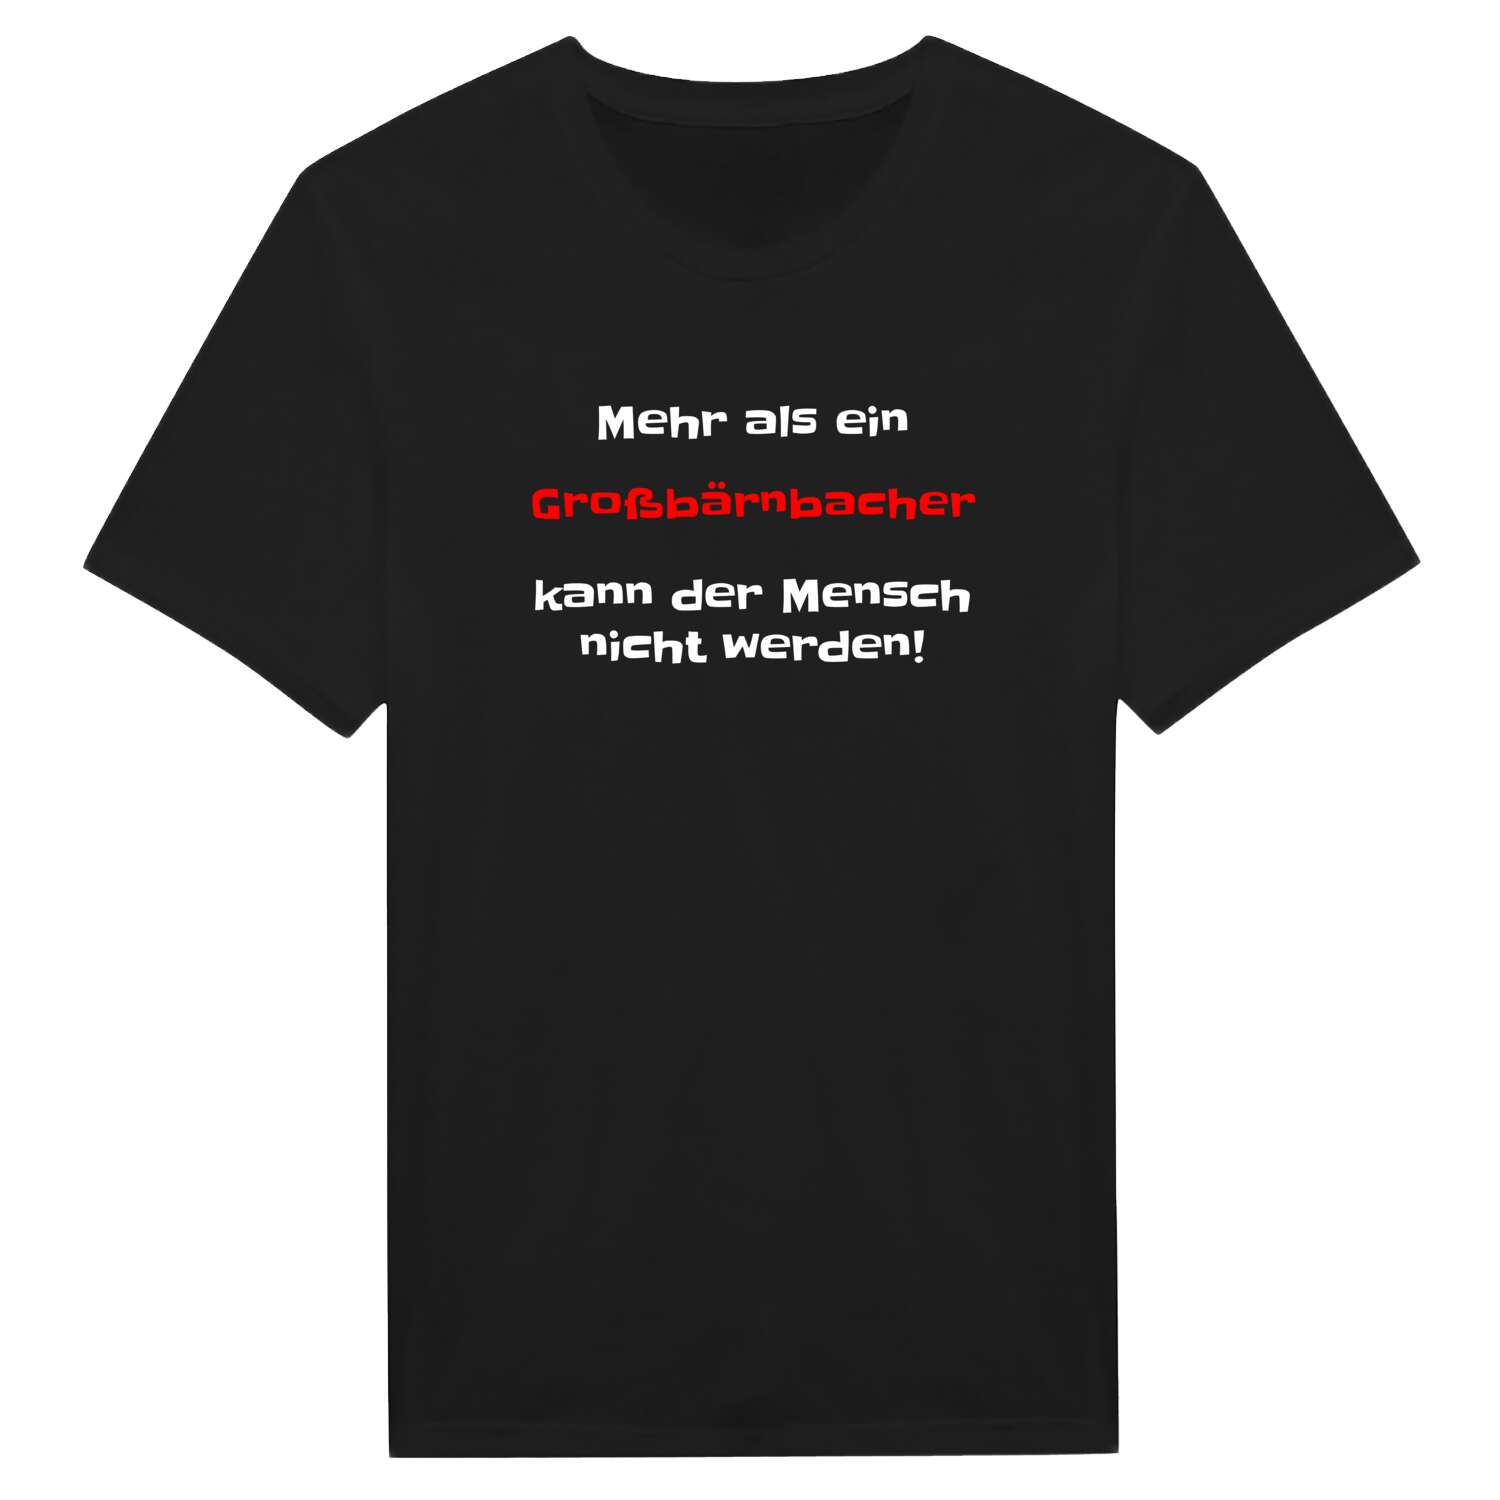 Großbärnbach T-Shirt »Mehr als ein«